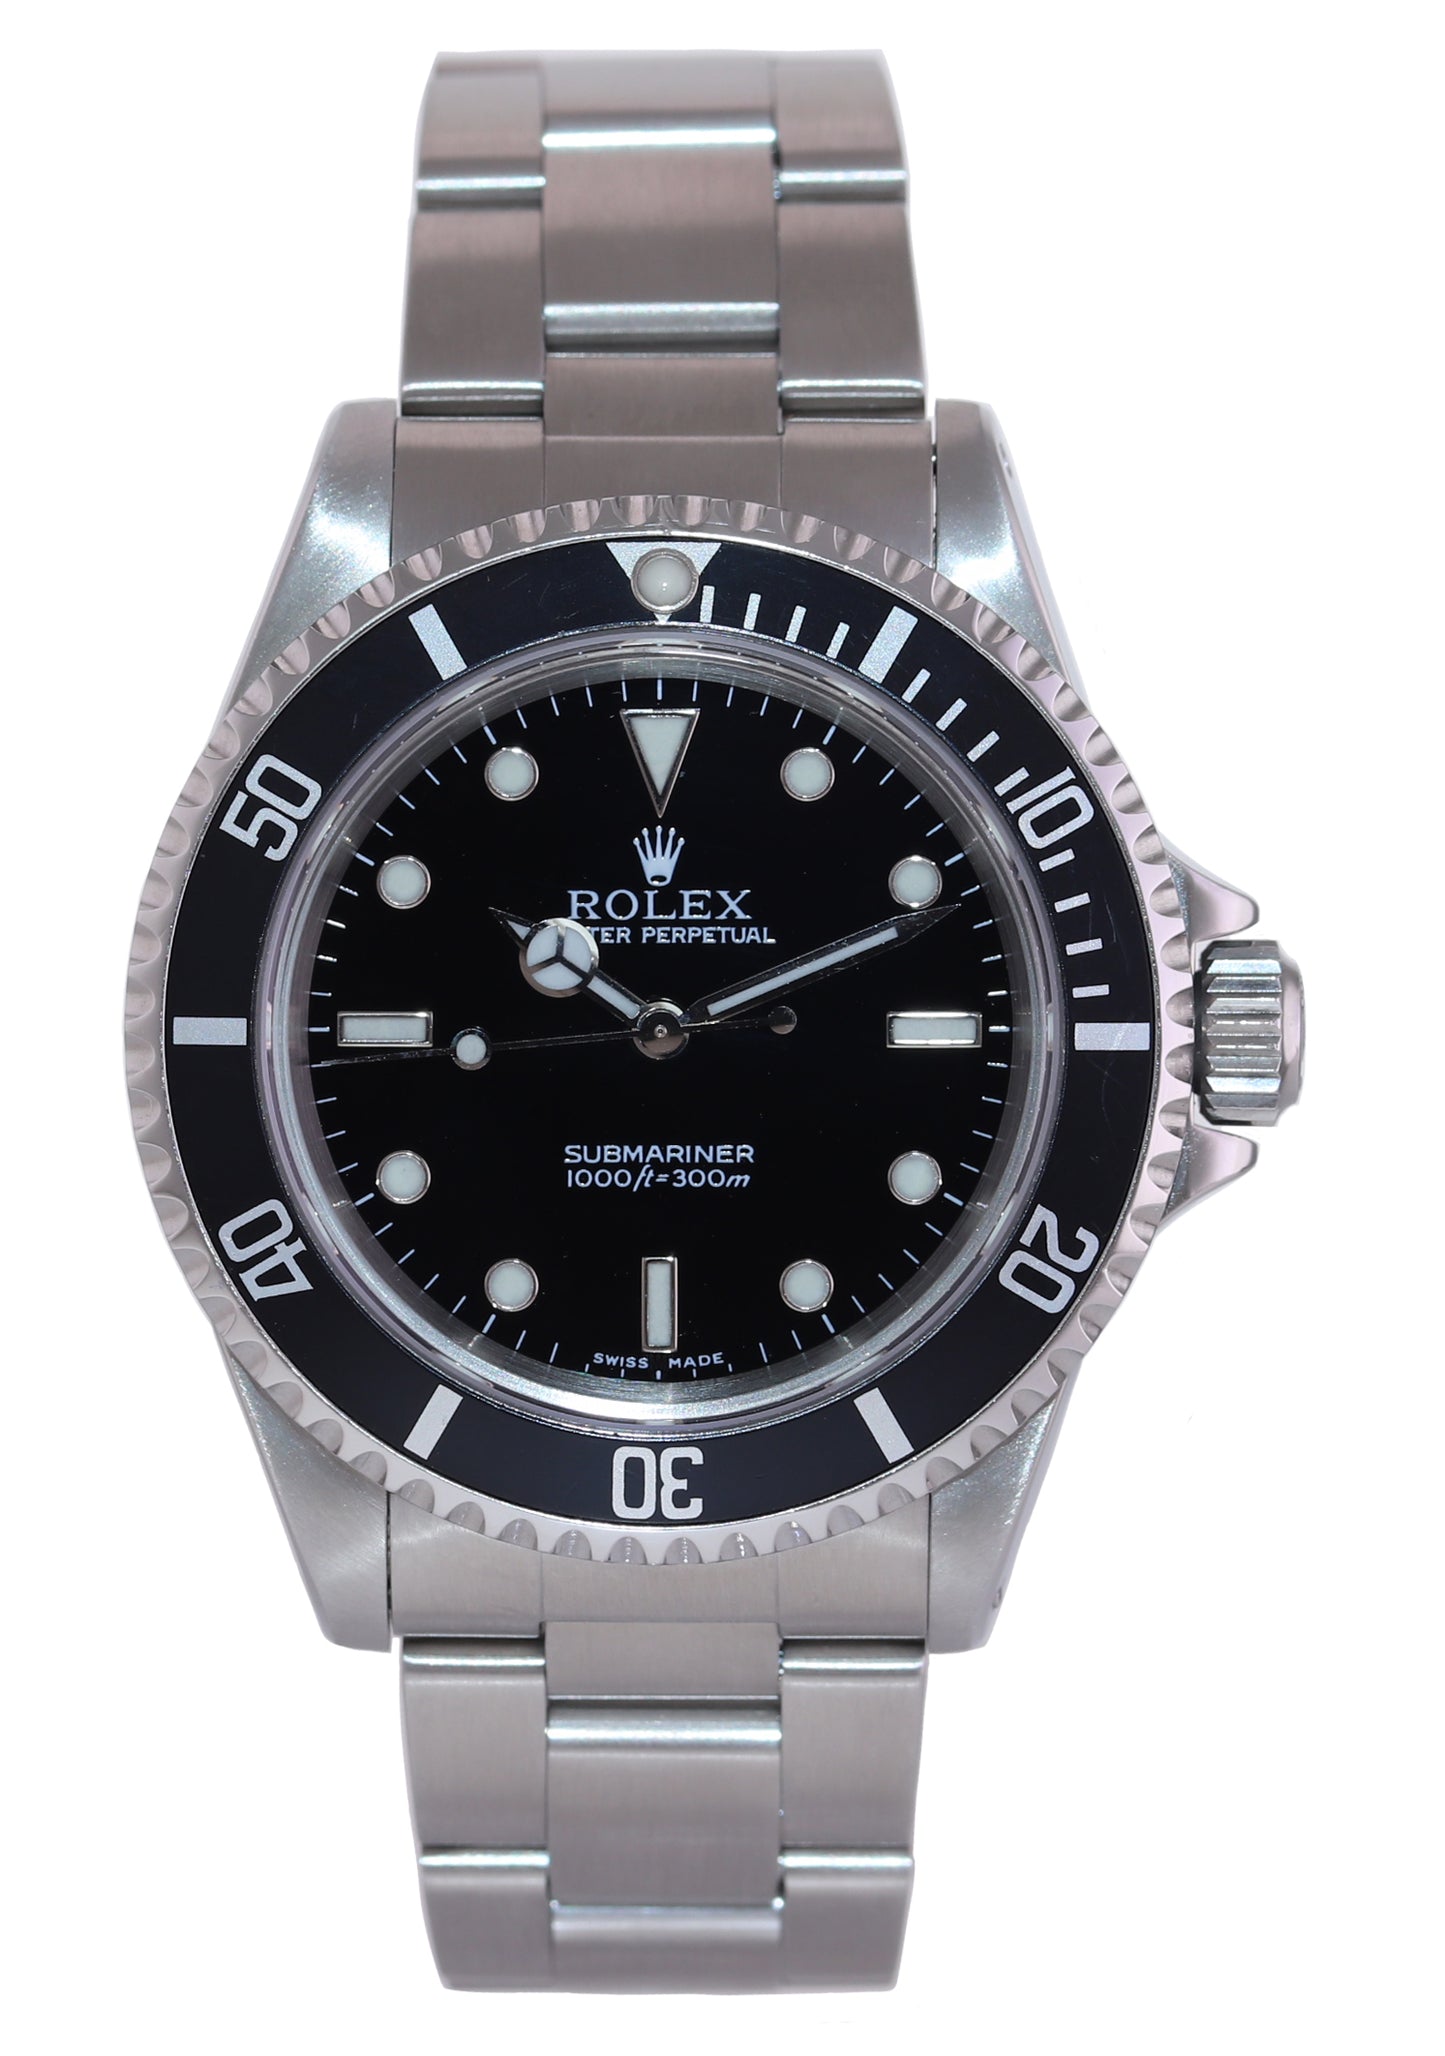 2020 ROLEX SERVICE Rolex Submariner No-Date 2 line dial 14060M Steel Black Watch Box